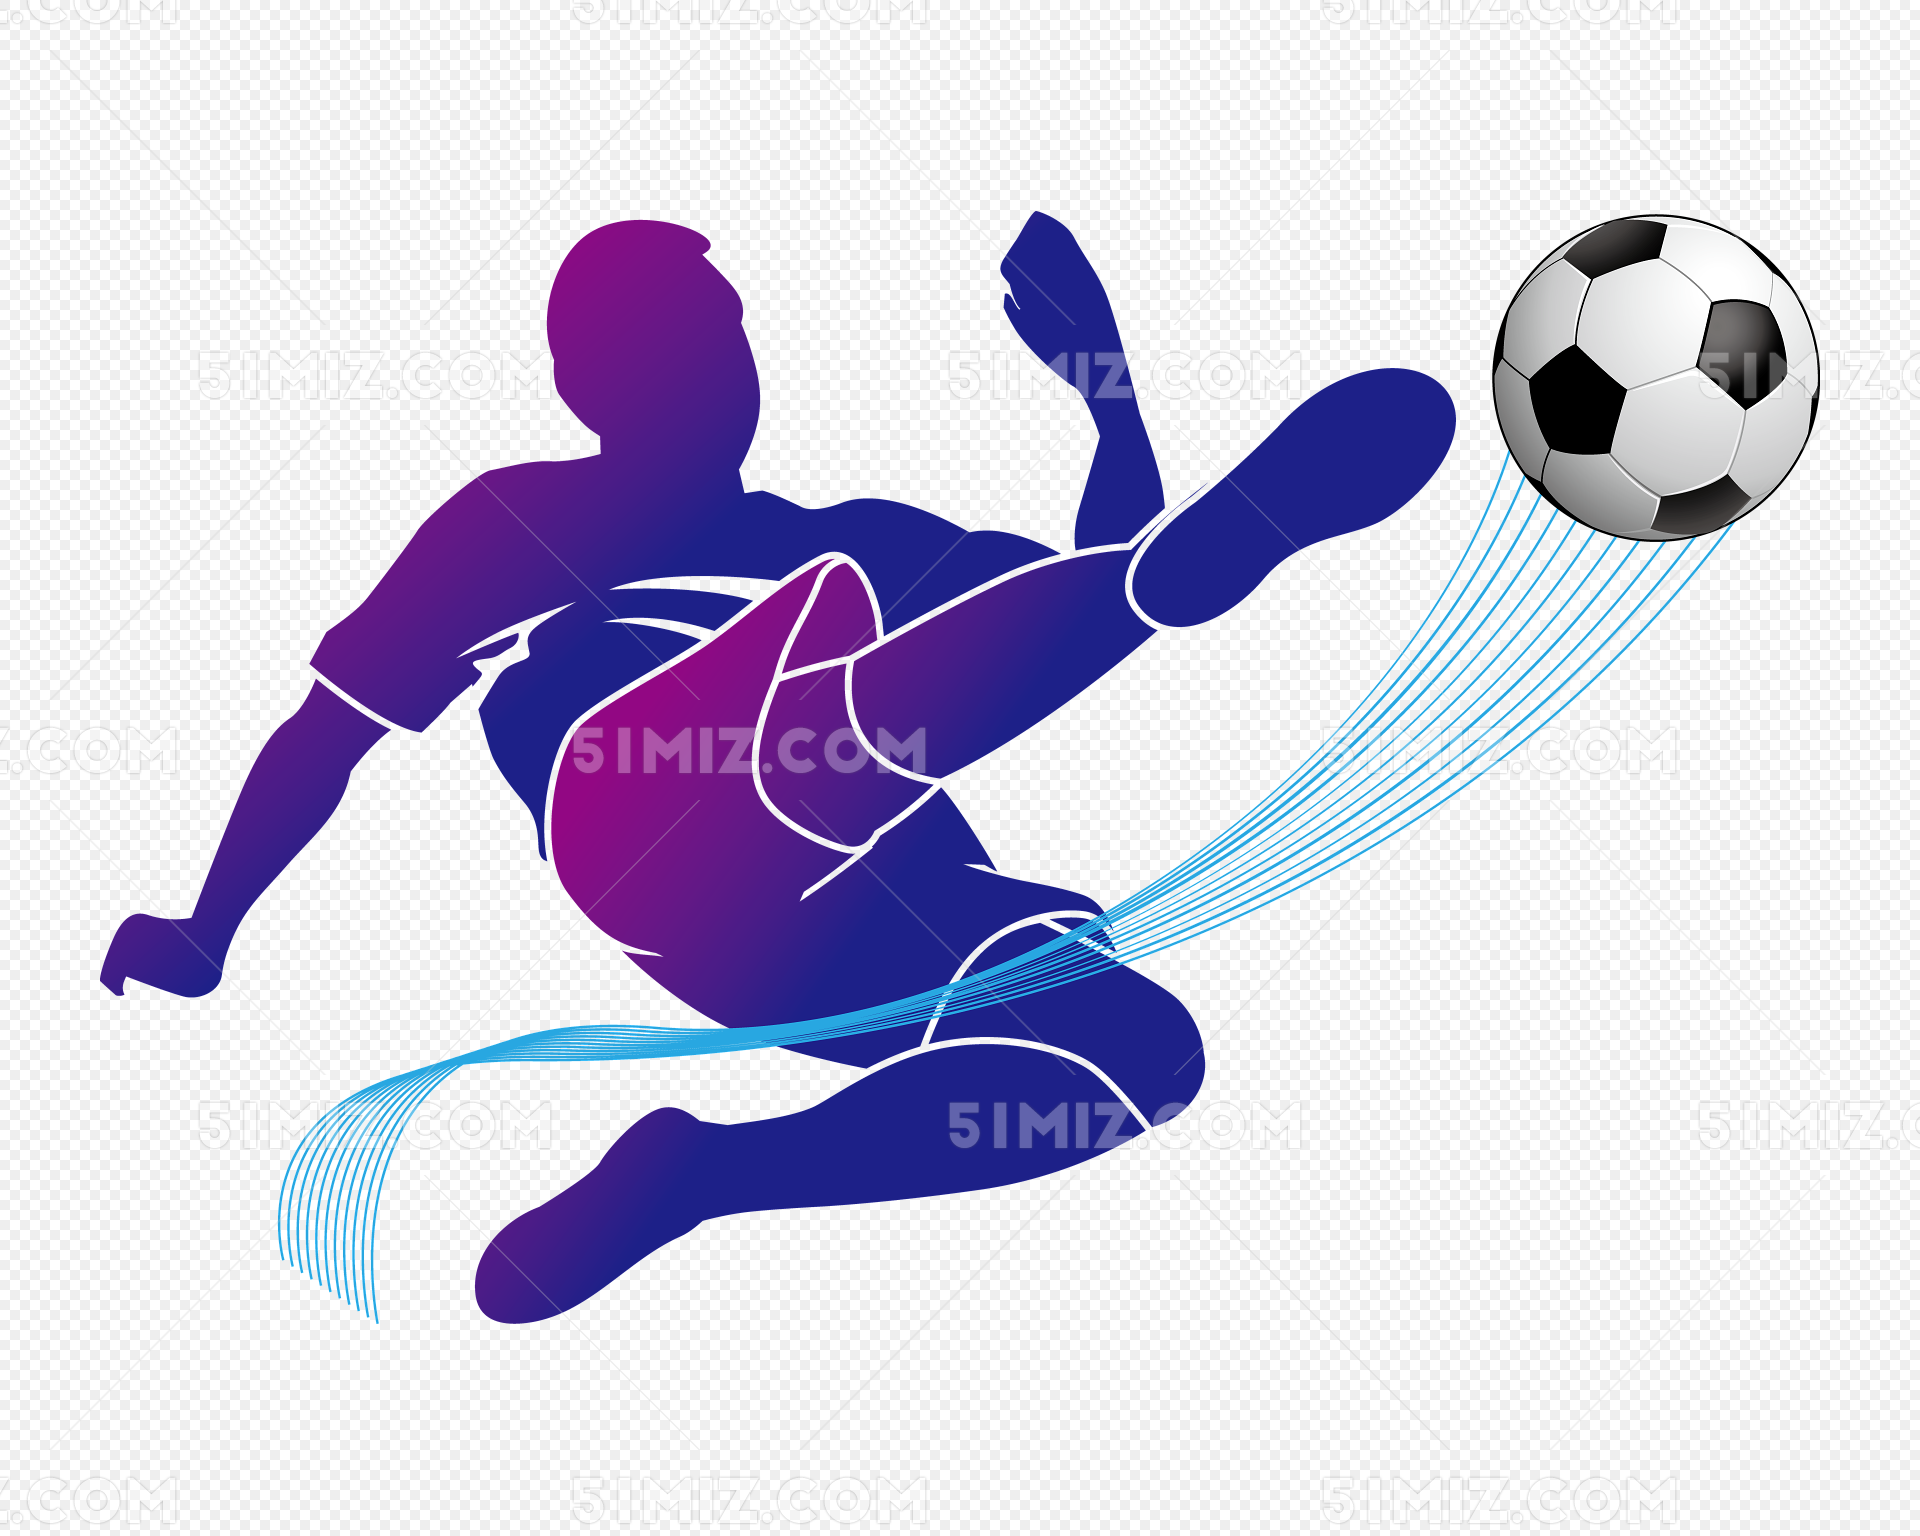 足球运动场景卡通手绘插画设计素材v1 Playing Football – Vector Illustration – 设计小咖